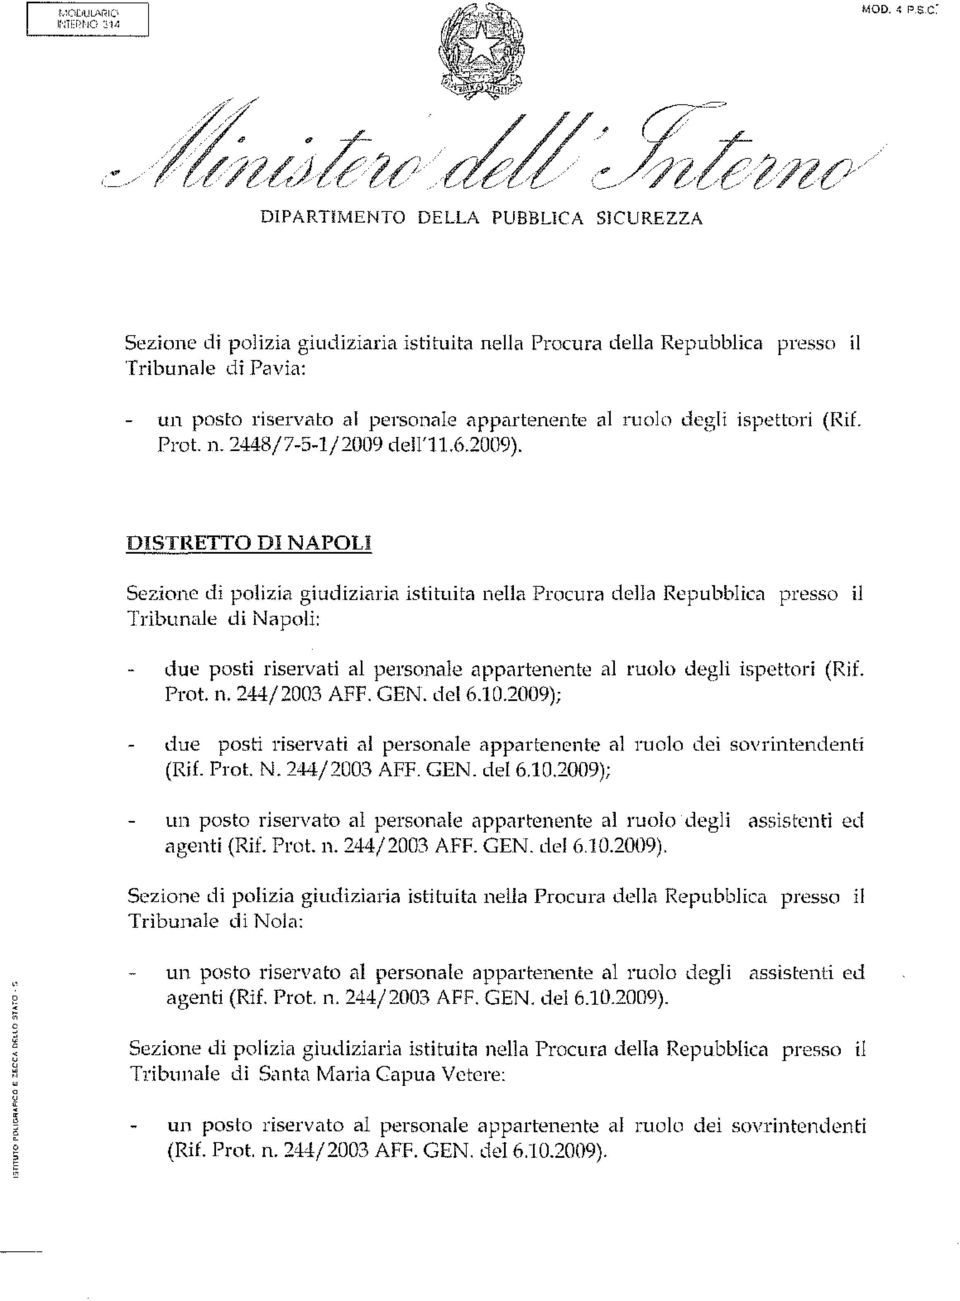 2009); due posti riservati al personale appartenente al ruolo dei sovrintendenti (Rif. Prot. N. 244/2003 AFF. GEN. del 6.10.